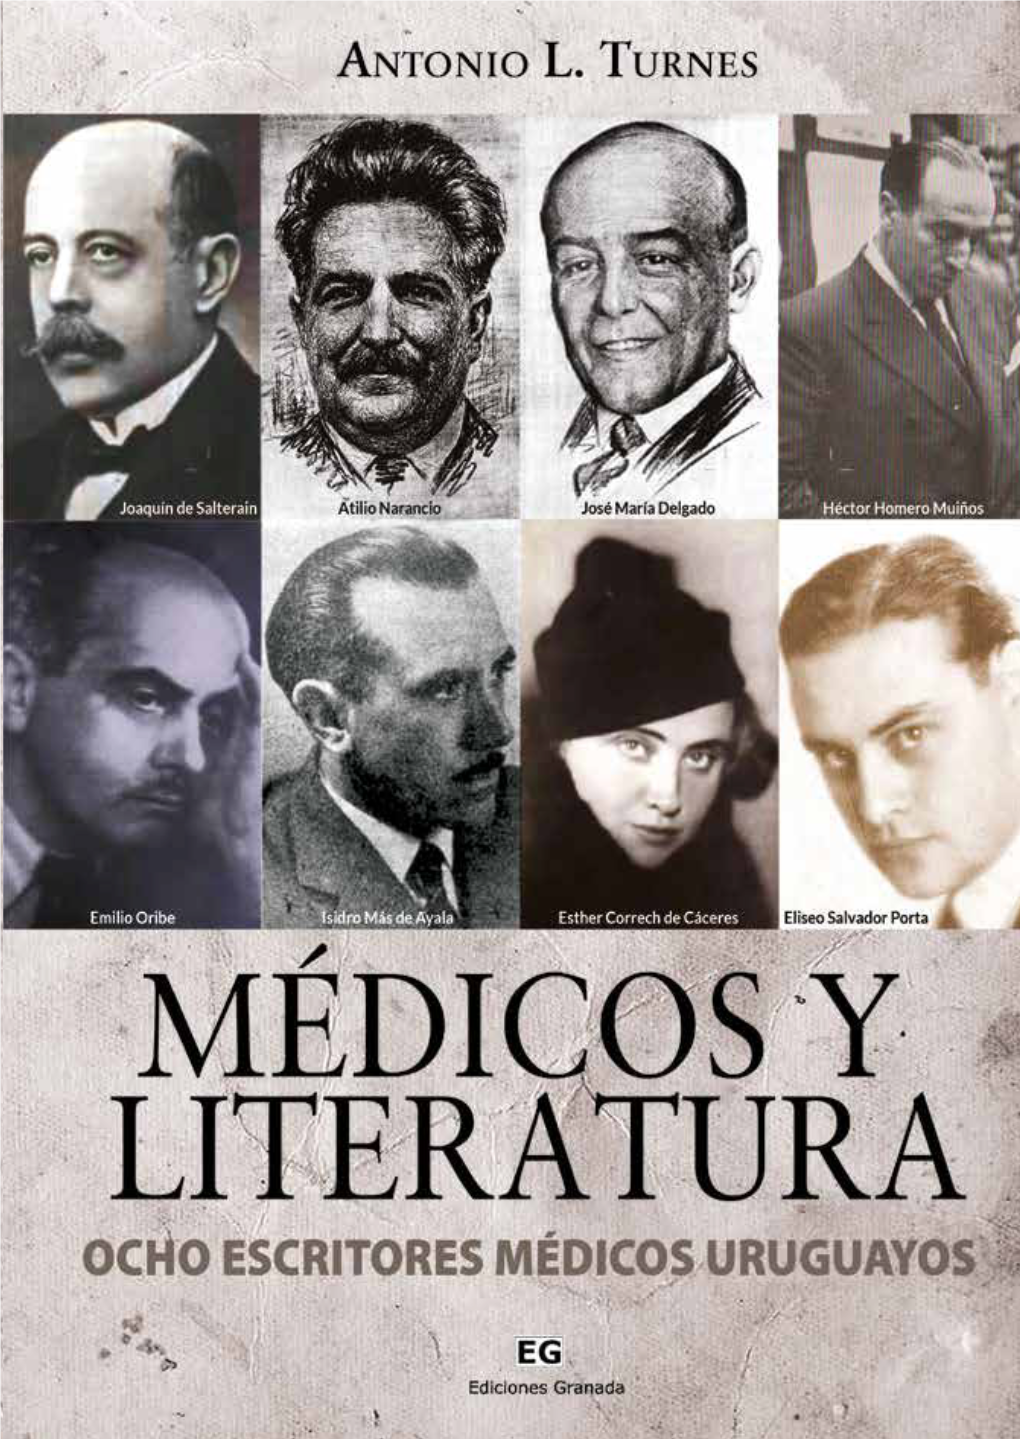 MÉDICOS Y LITERATURA Antonio L